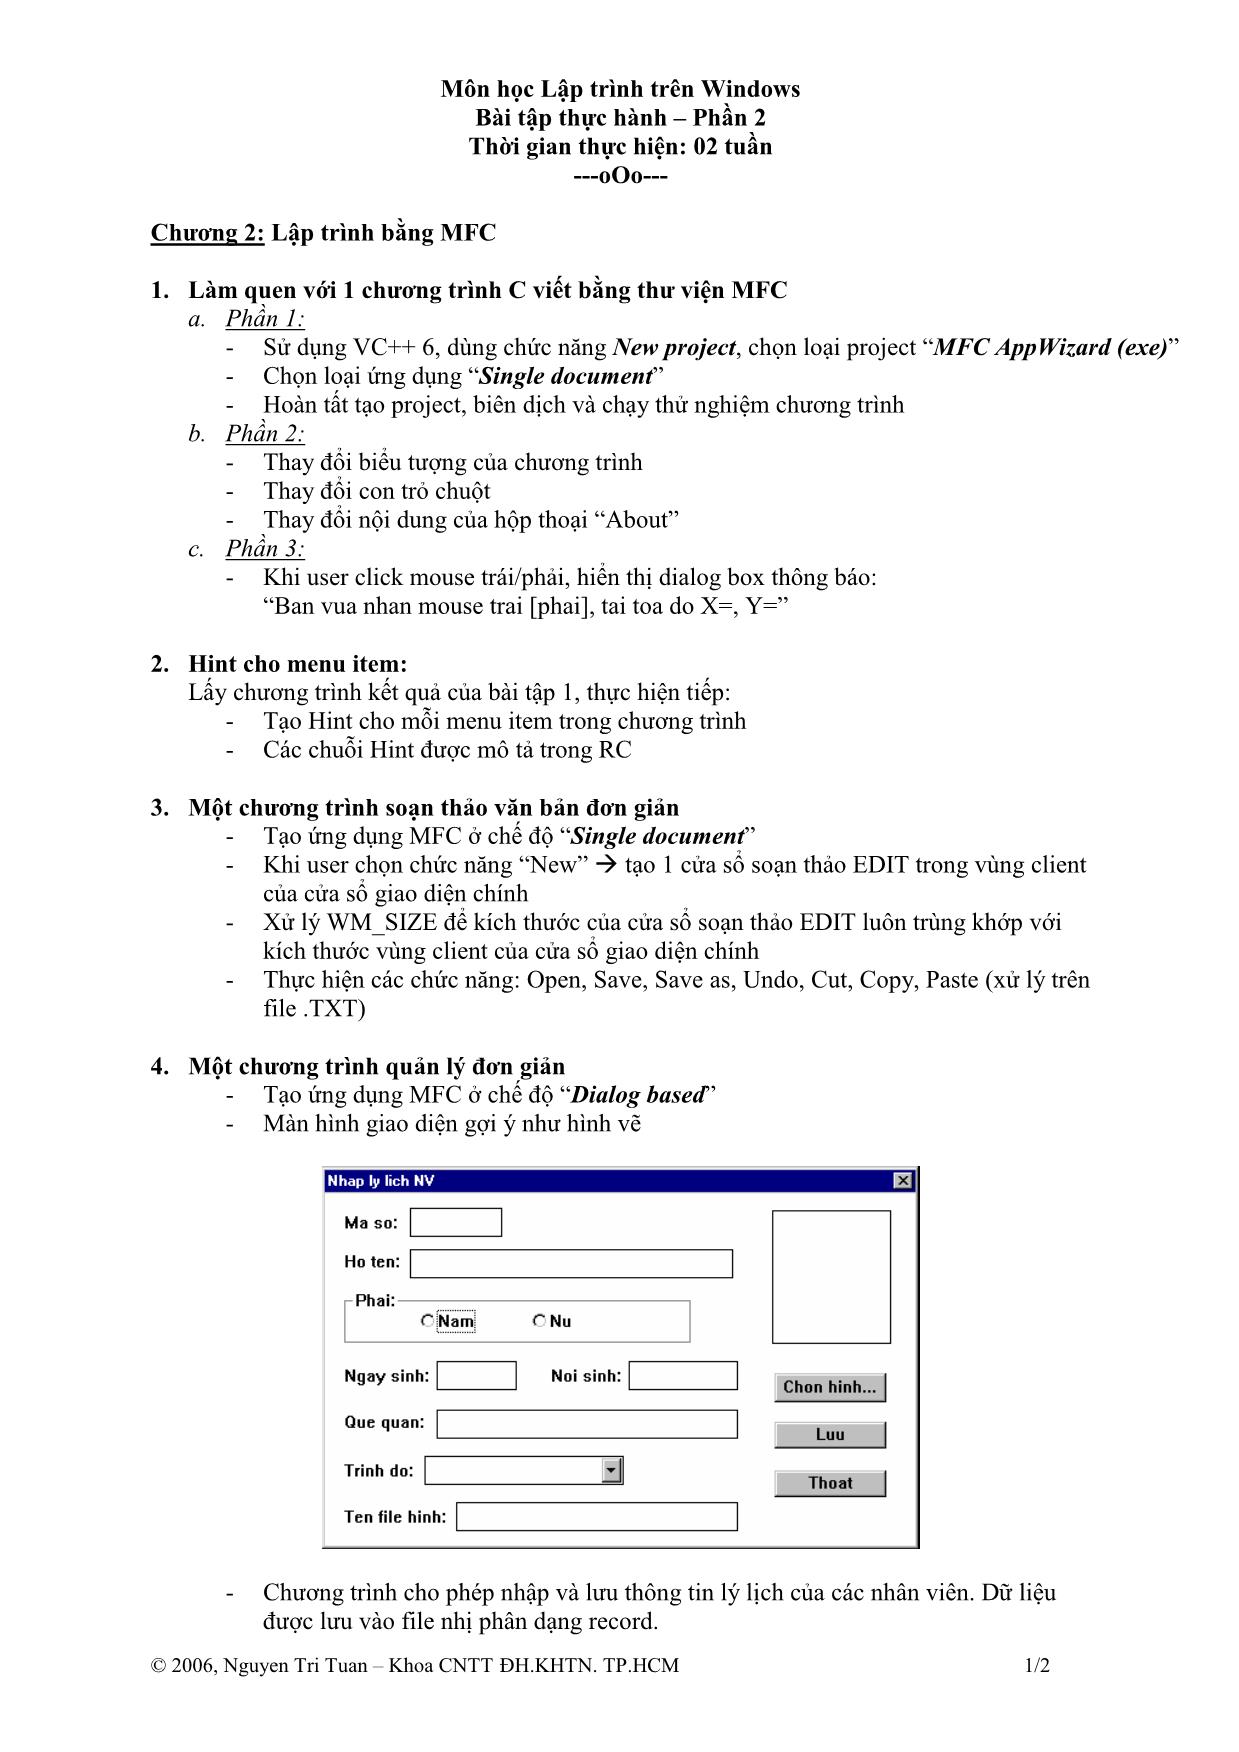 Bài tập thực hành môn Lập trình trên Windows trang 3